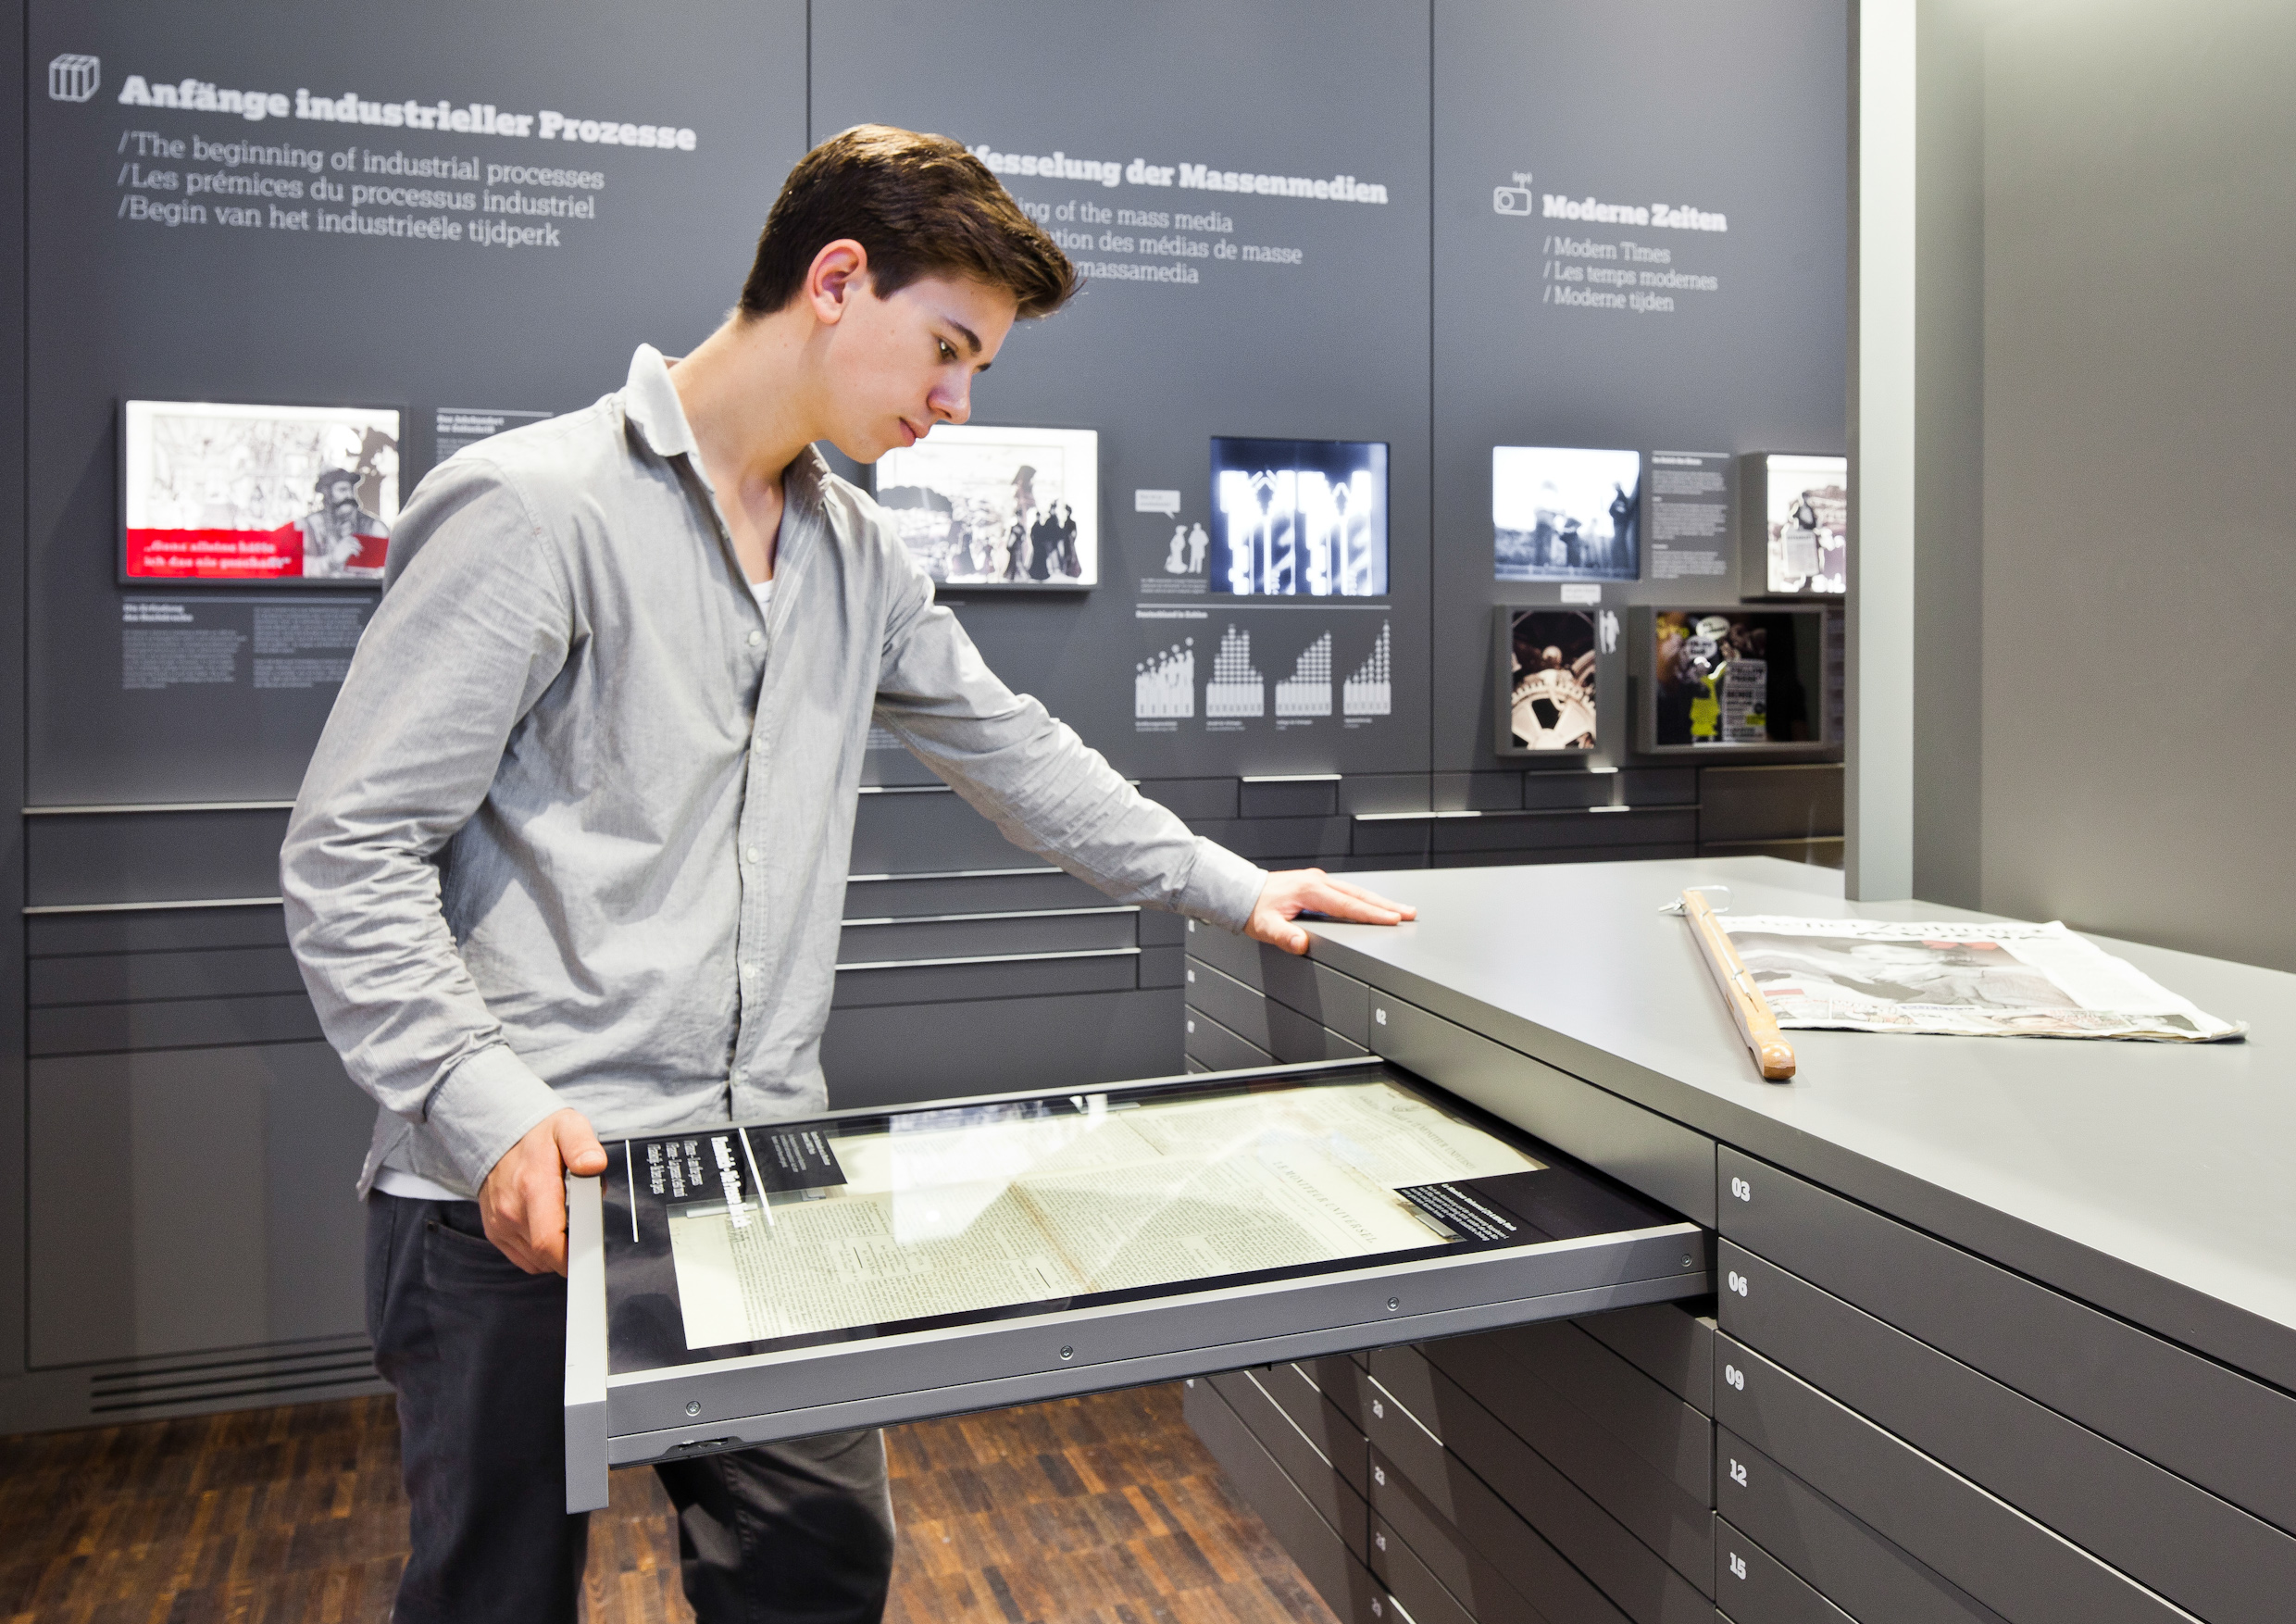 Ein Besucher des Internationalen Zeitungsmuseums liest sich die Inhalte einer Zeitungsschublade durch